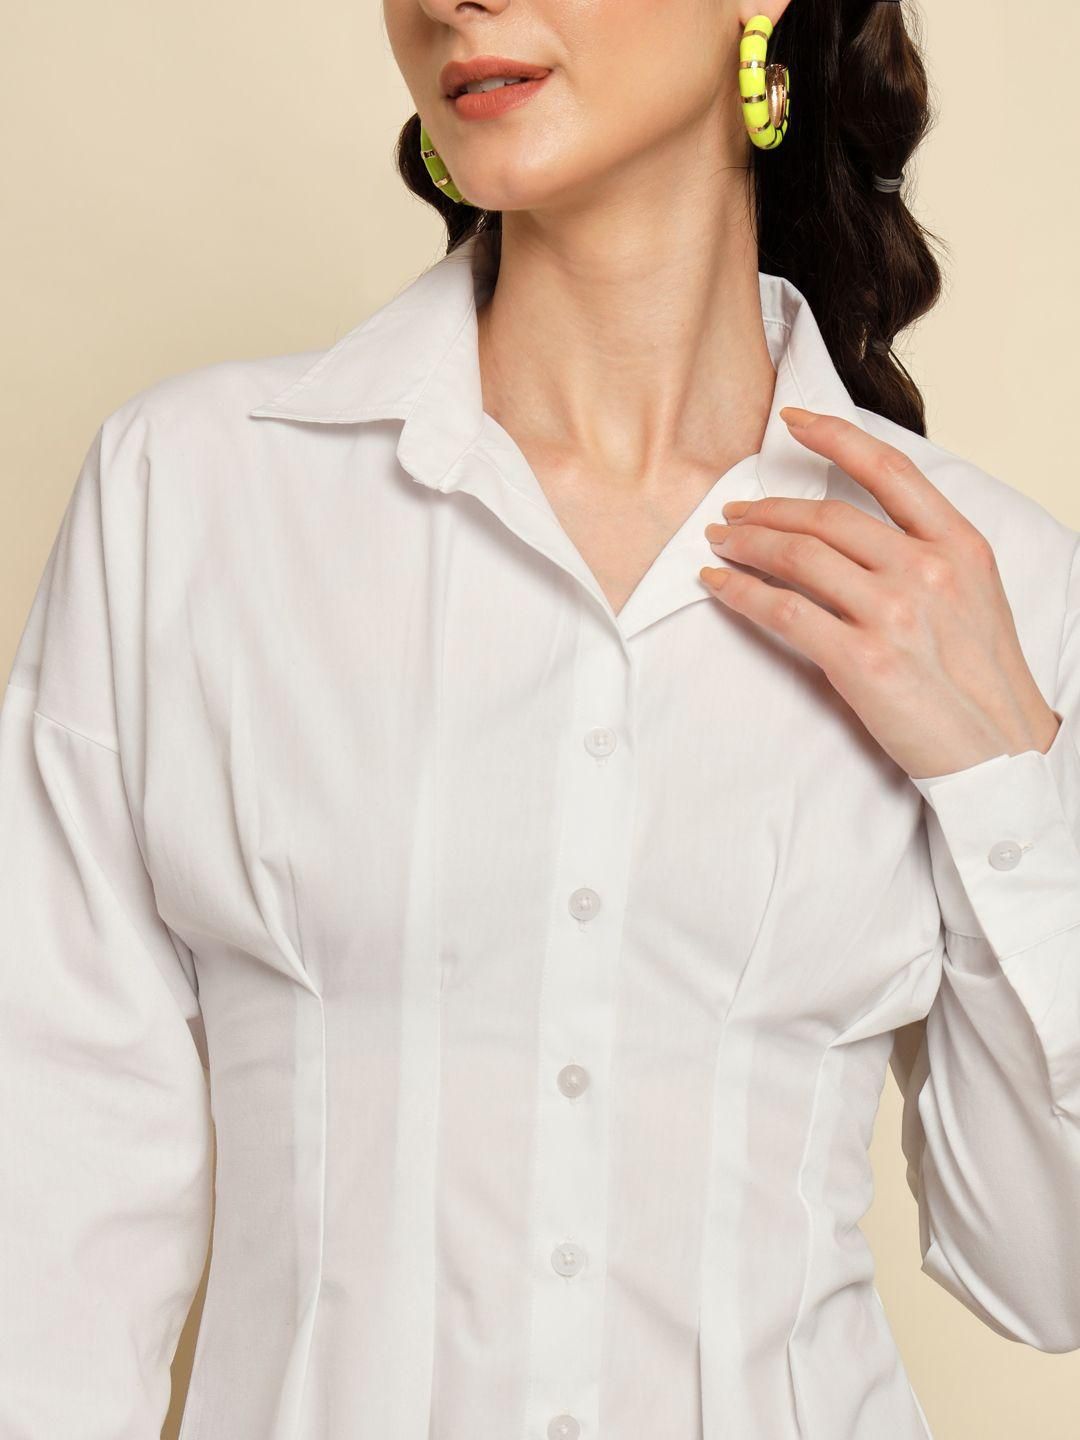 TRENDARREST Women's White Dart Detail Shirt Dress